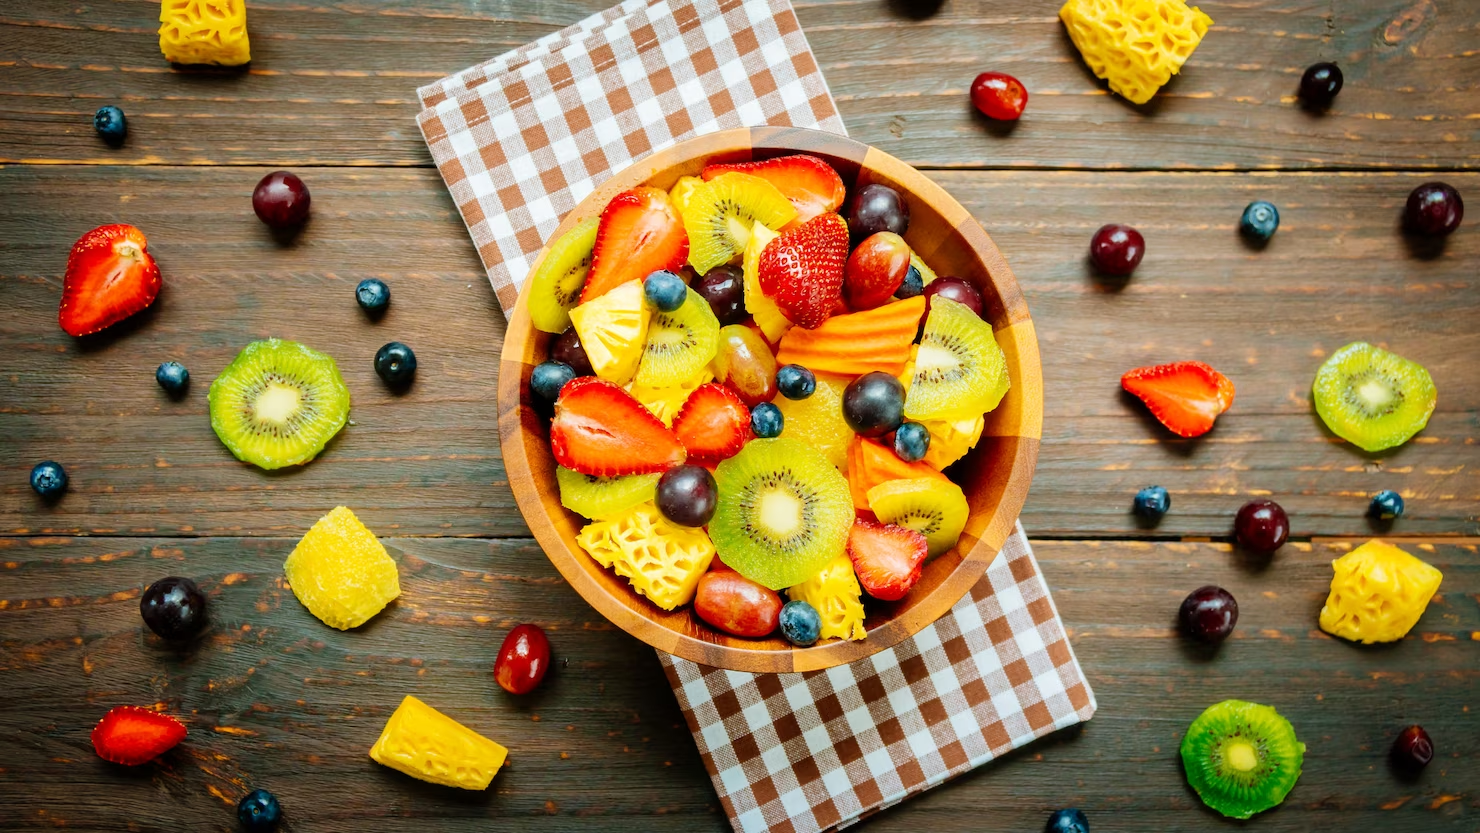 การกินผลไม้ช่วยให้ร่างกายได้รับสารอาหารครบถ้วน